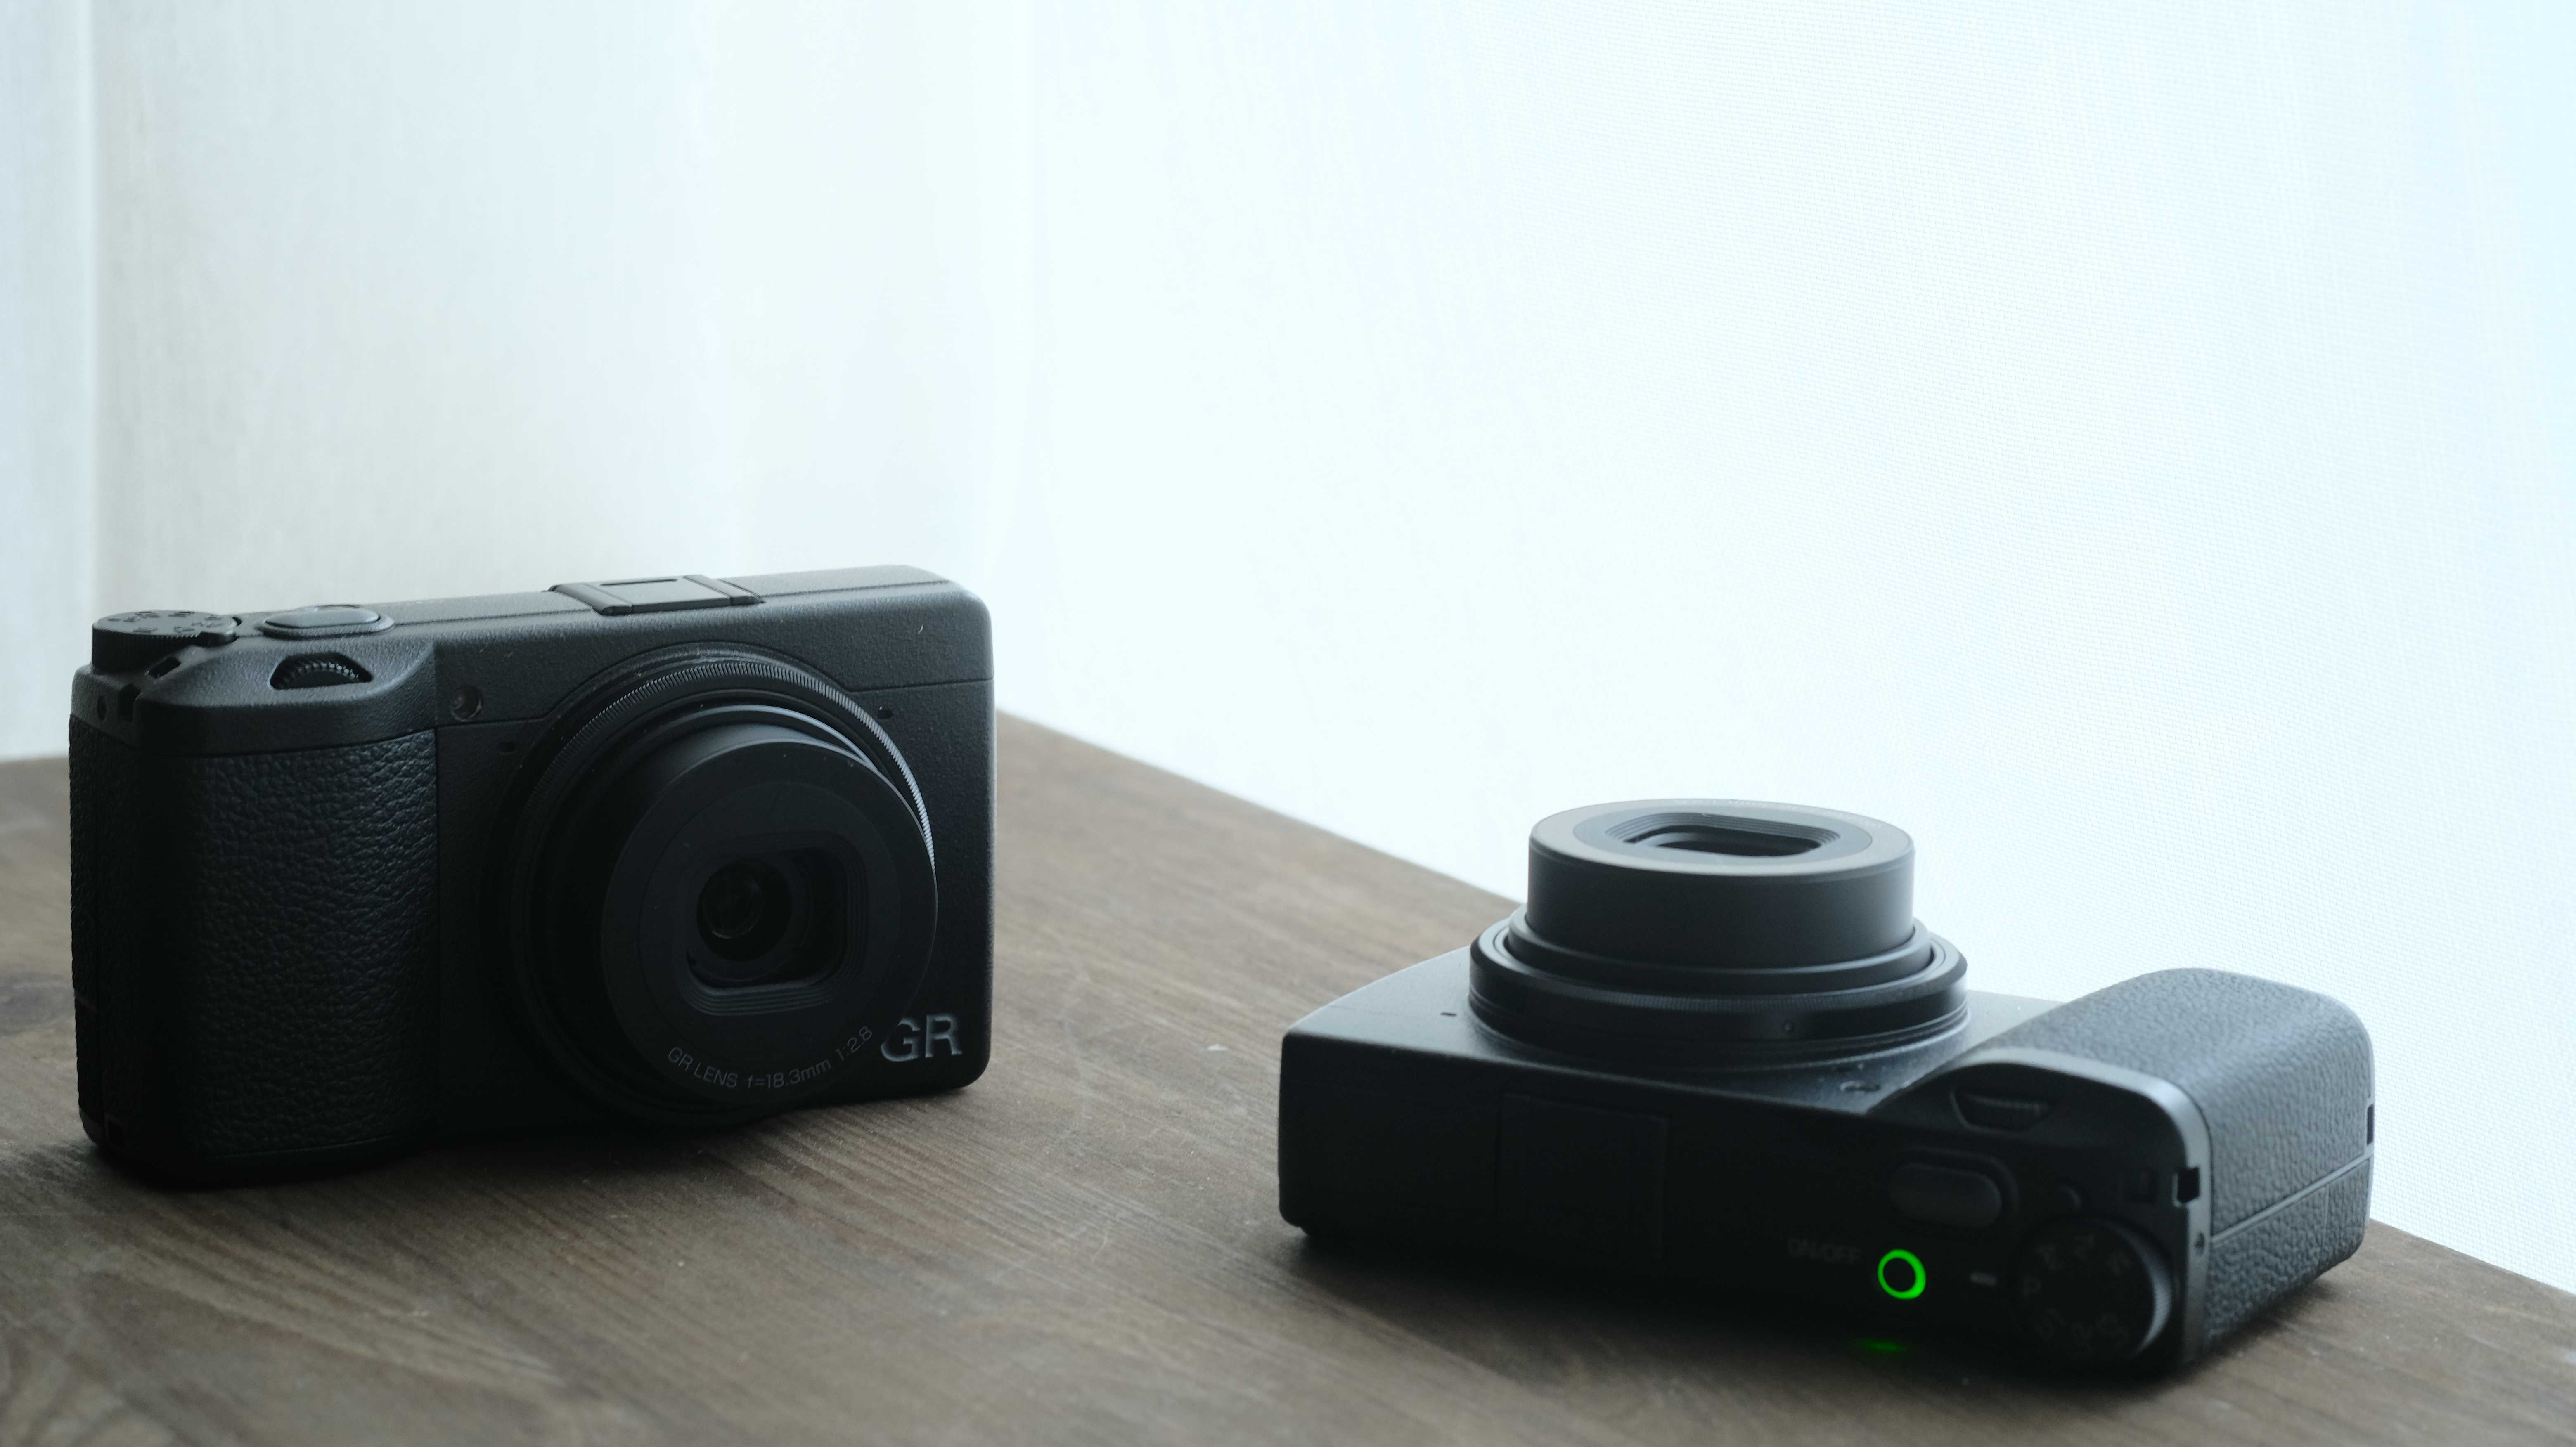  GR-III-Kameras auf Tisch